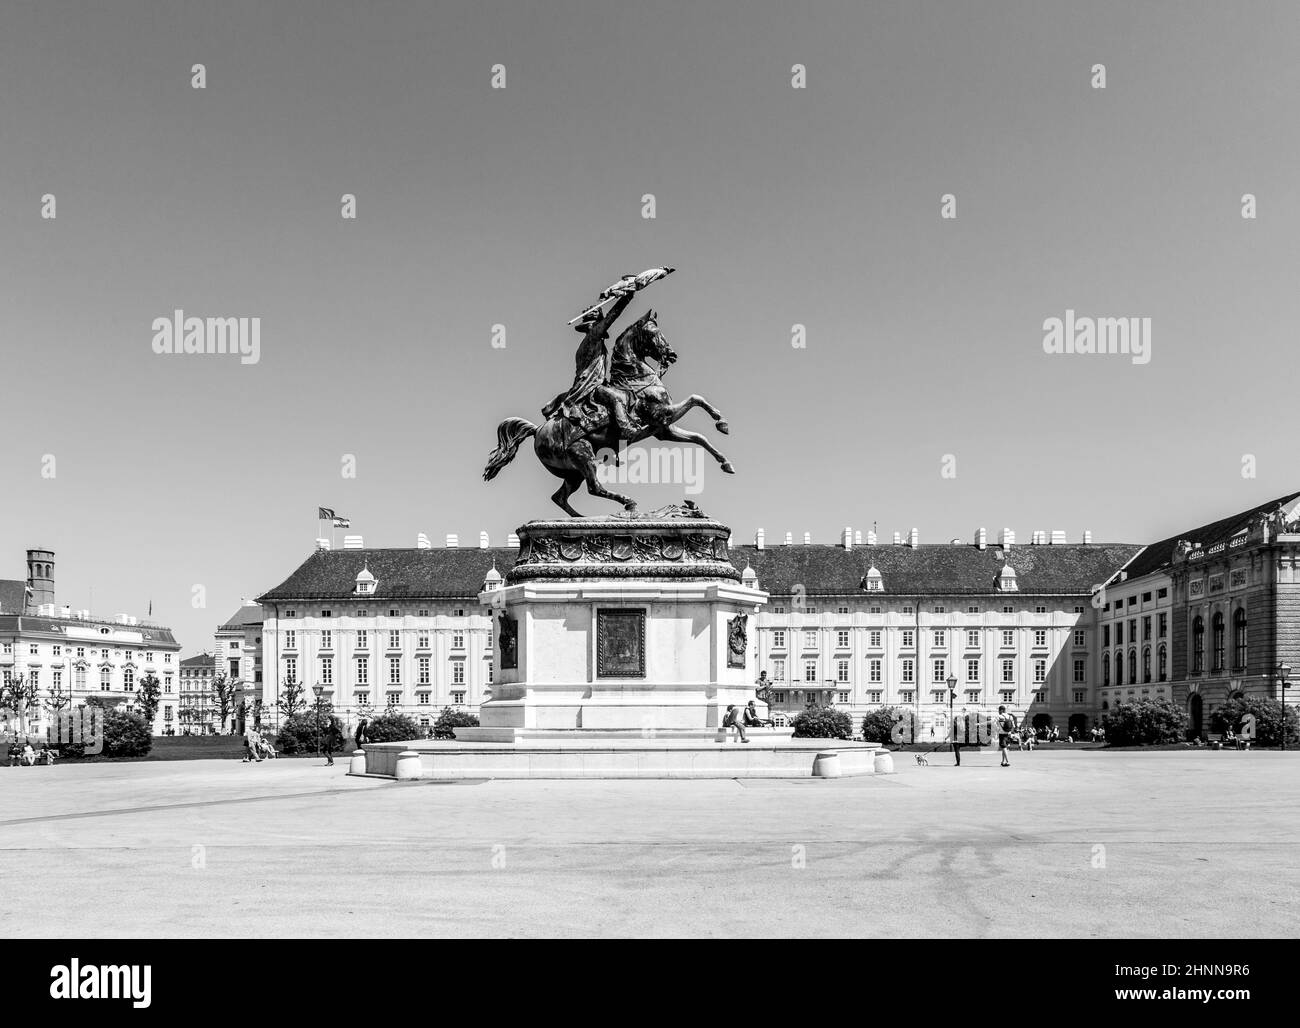 Vista de Heldenplatz - espacio público conestatua ecuestre del Archiduque Carlos de Austria Foto de stock